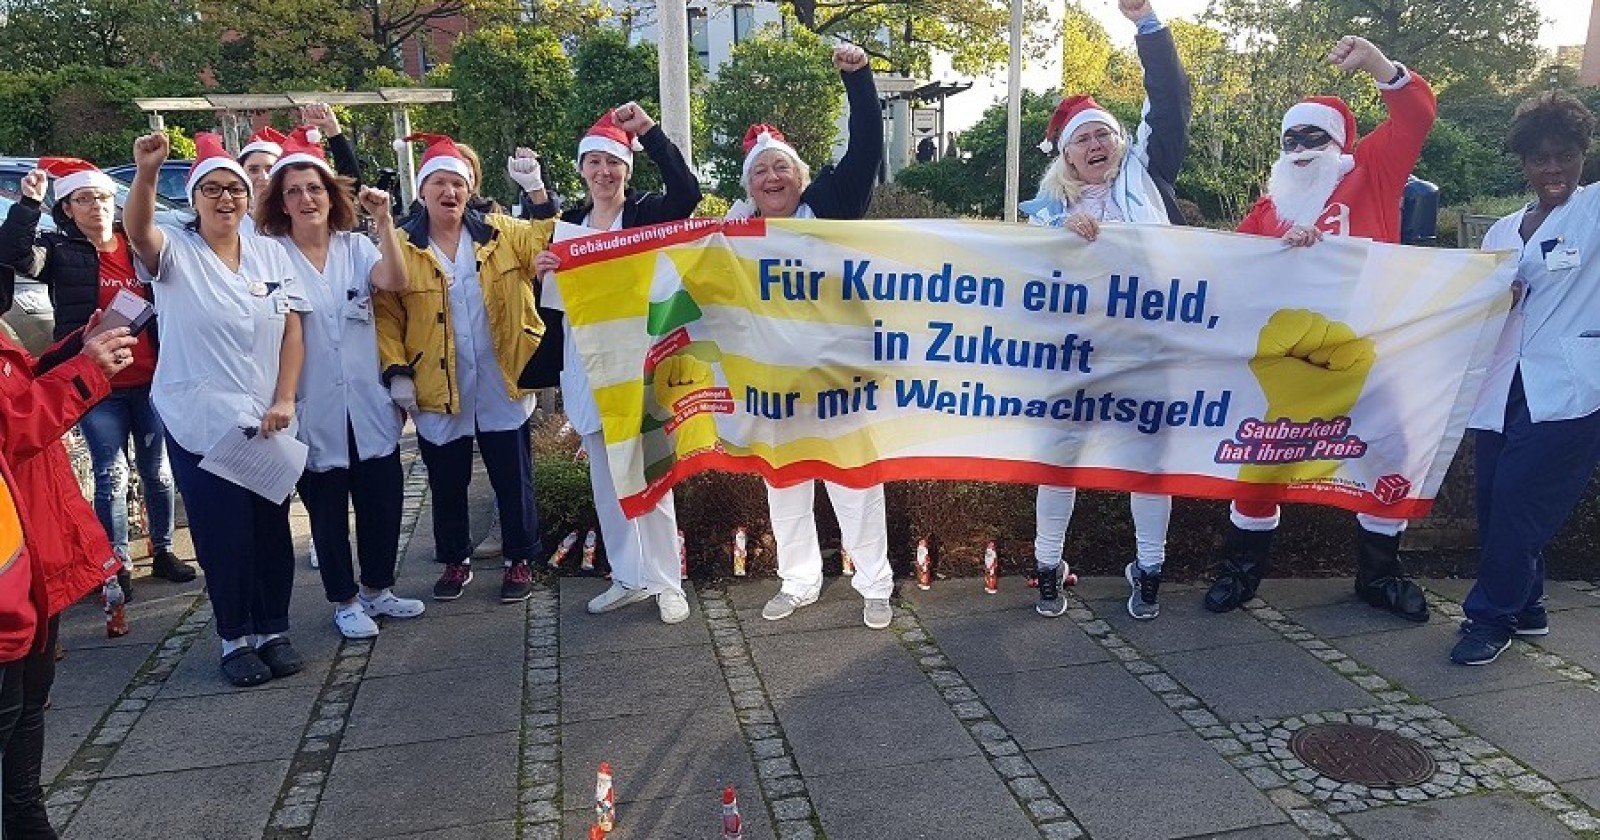 Weihnachtsgeld-Aktion in Flensburg: GebäudereinigerInnen, 300 Schoko-Weihnachtsmänner, Solidarität und ein Störenfried